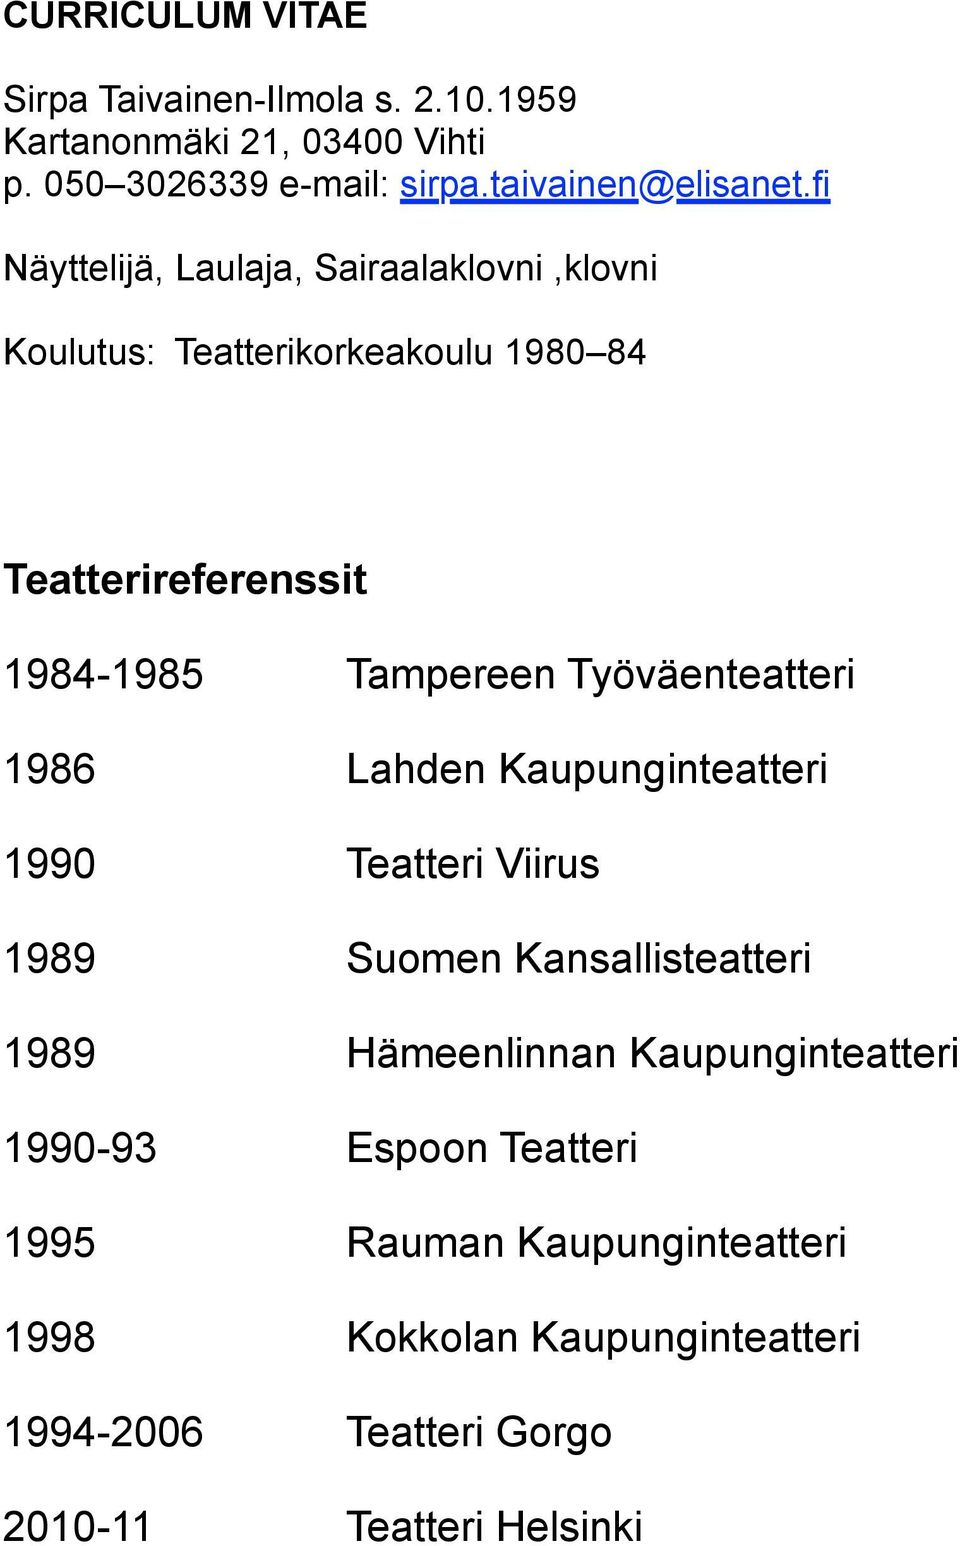 Työväenteatteri 1986 Lahden Kaupunginteatteri 1990 Teatteri Viirus 1989 Suomen Kansallisteatteri 1989 Hämeenlinnan